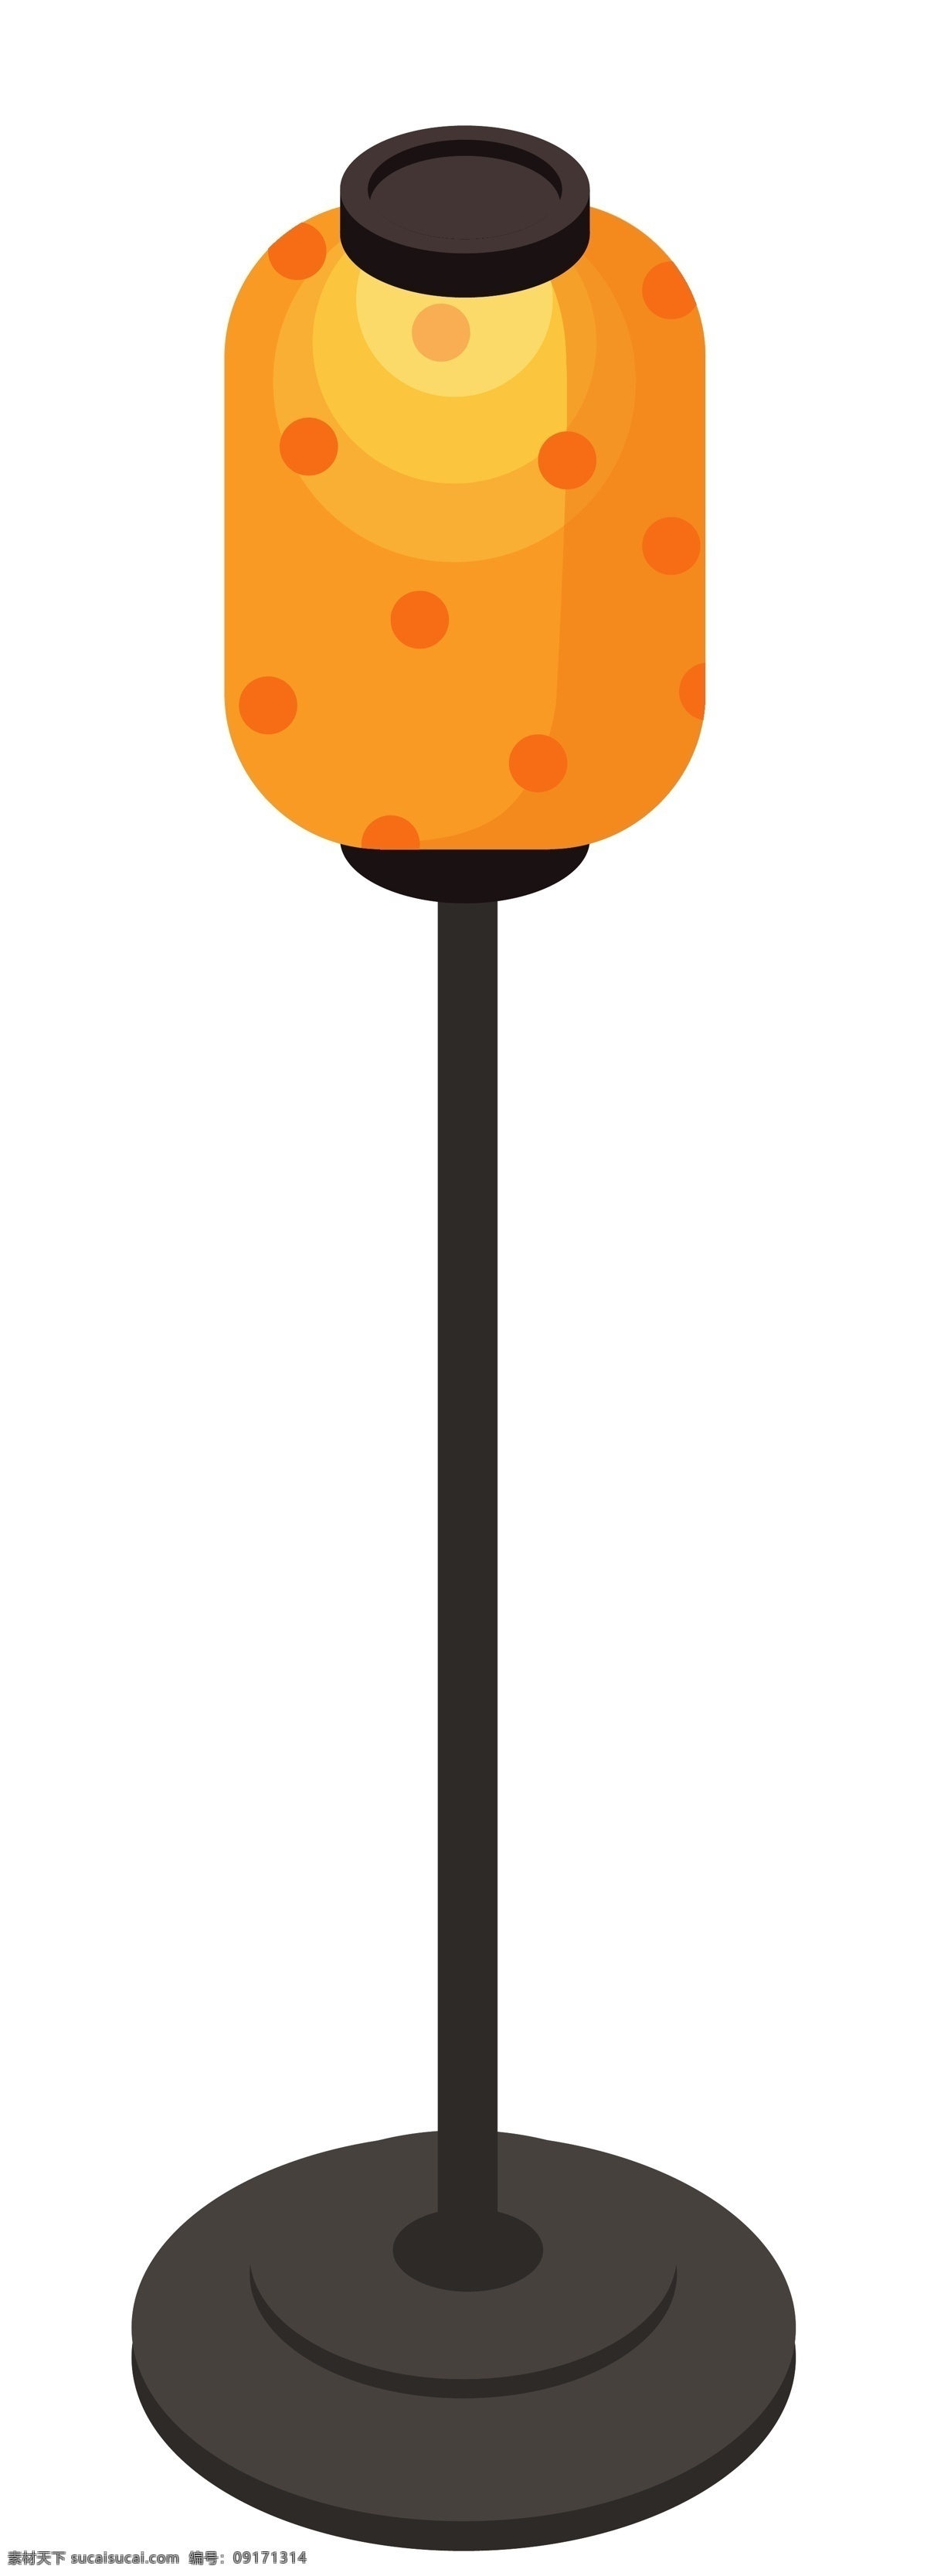 新年 d 扁平化 灯笼 立体 装饰 黄色的灯笼 漂亮的灯笼 黑色的灯杆 卡通插画 手绘灯笼插画